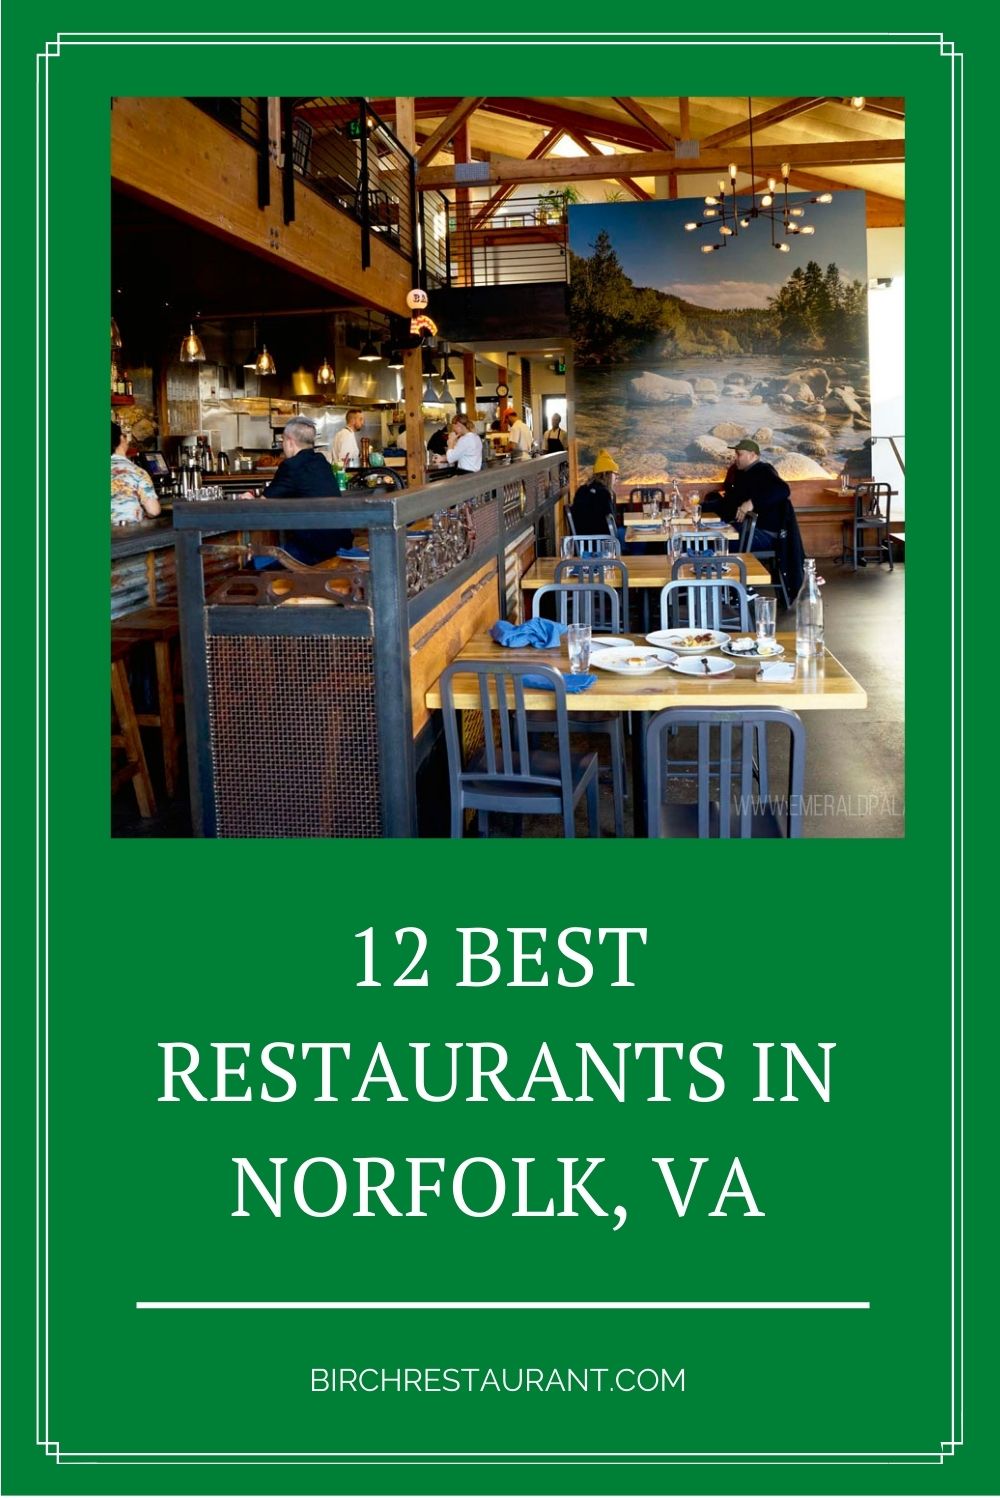 Best Restaurants in Norfolk